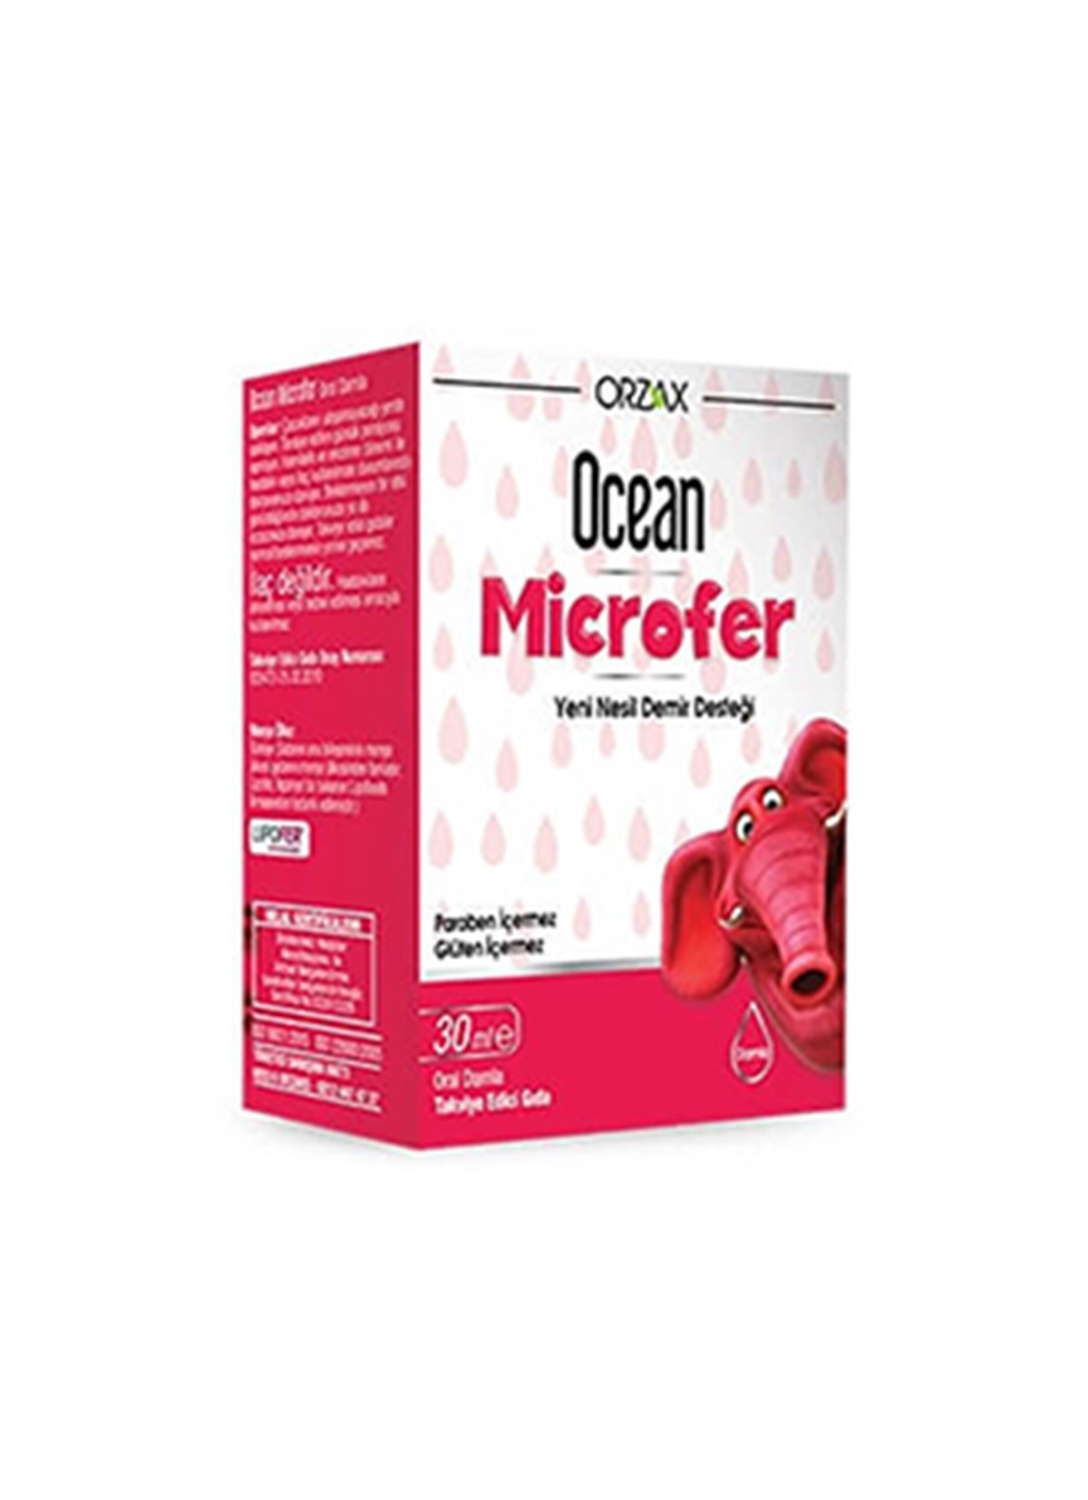 Капли Ocean Microfer 30 мл ORZAX цена и фото